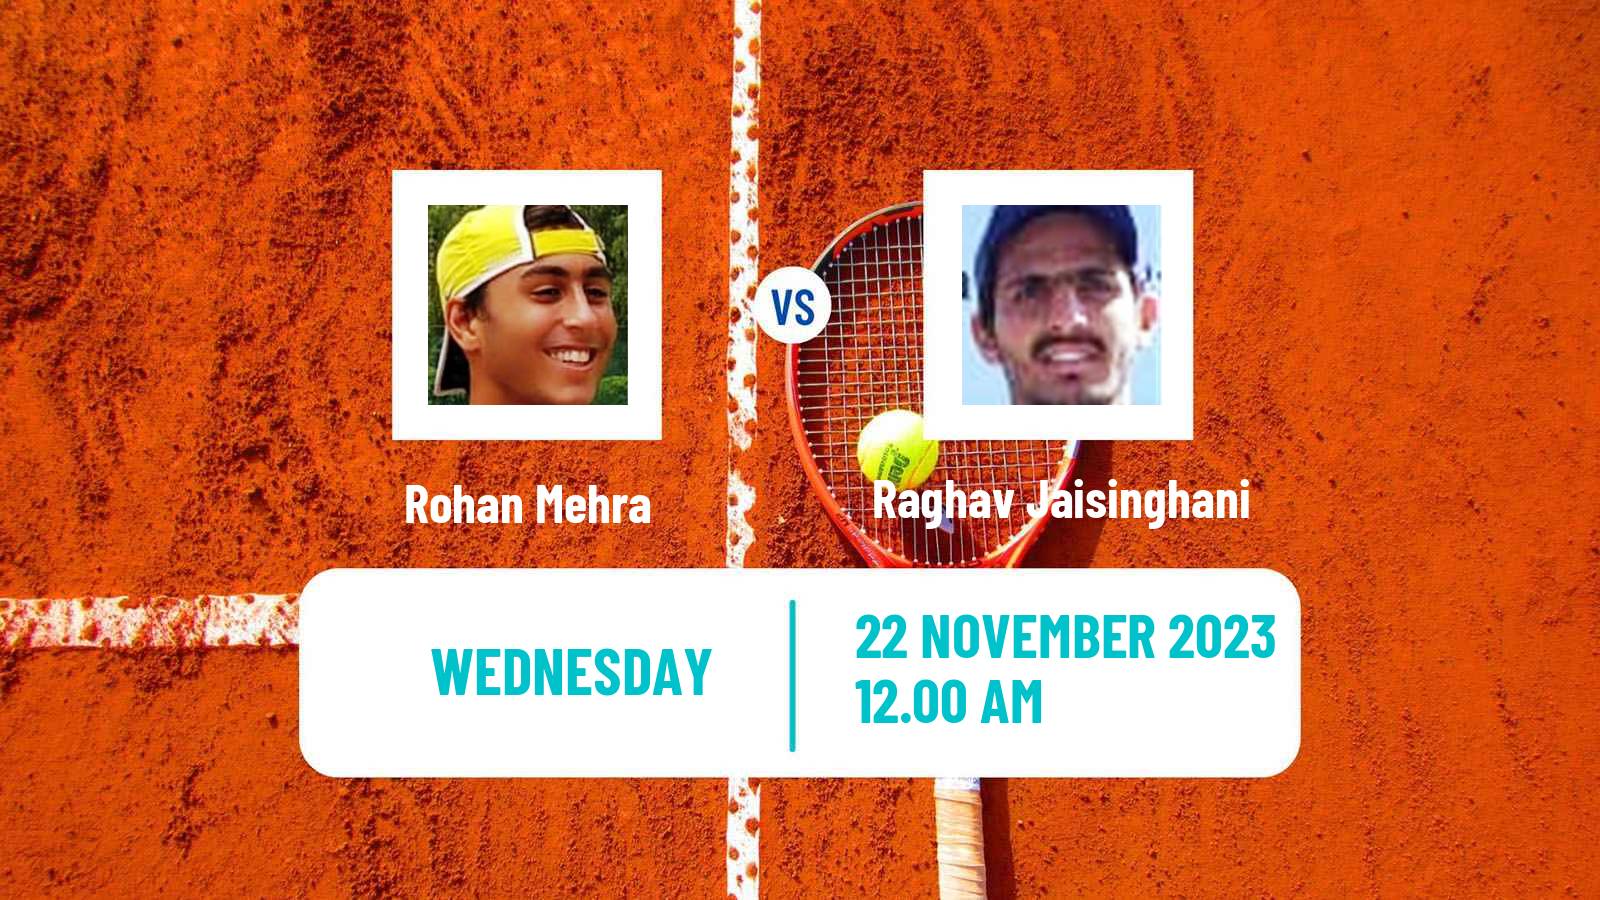 Tennis ITF M25 Mumbai Men Rohan Mehra - Raghav Jaisinghani